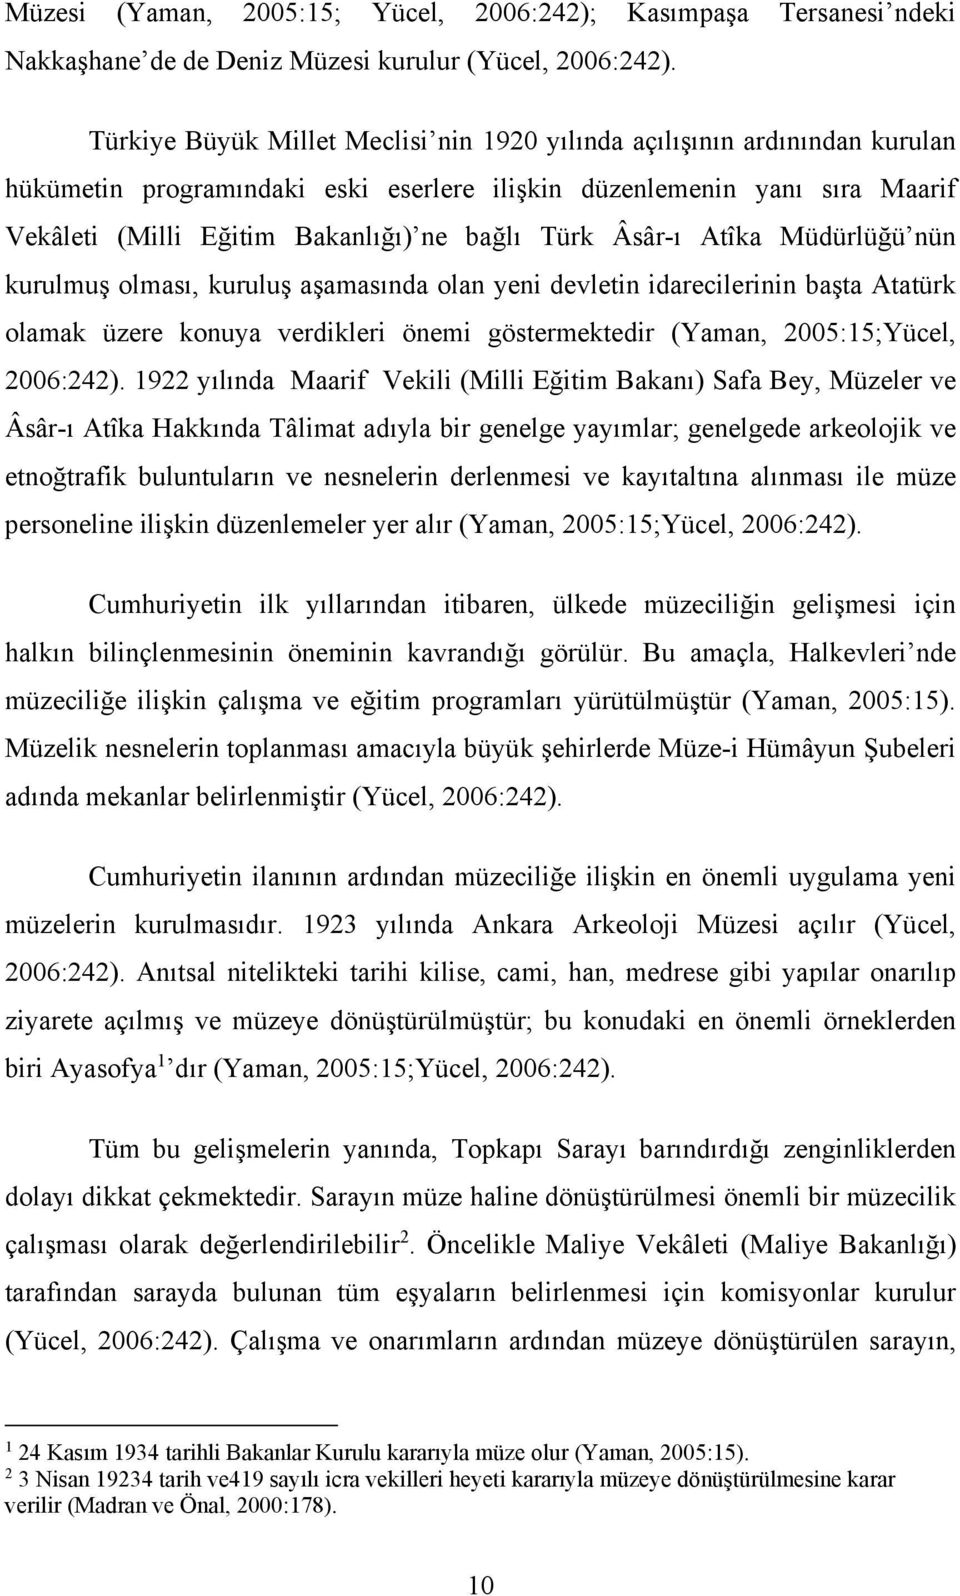 Âsâr-ı Atîka Müdürlüğü nün kurulmuş olması, kuruluş aşamasında olan yeni devletin idarecilerinin başta Atatürk olamak üzere konuya verdikleri önemi göstermektedir (Yaman, 2005:15;Yücel, 2006:242).